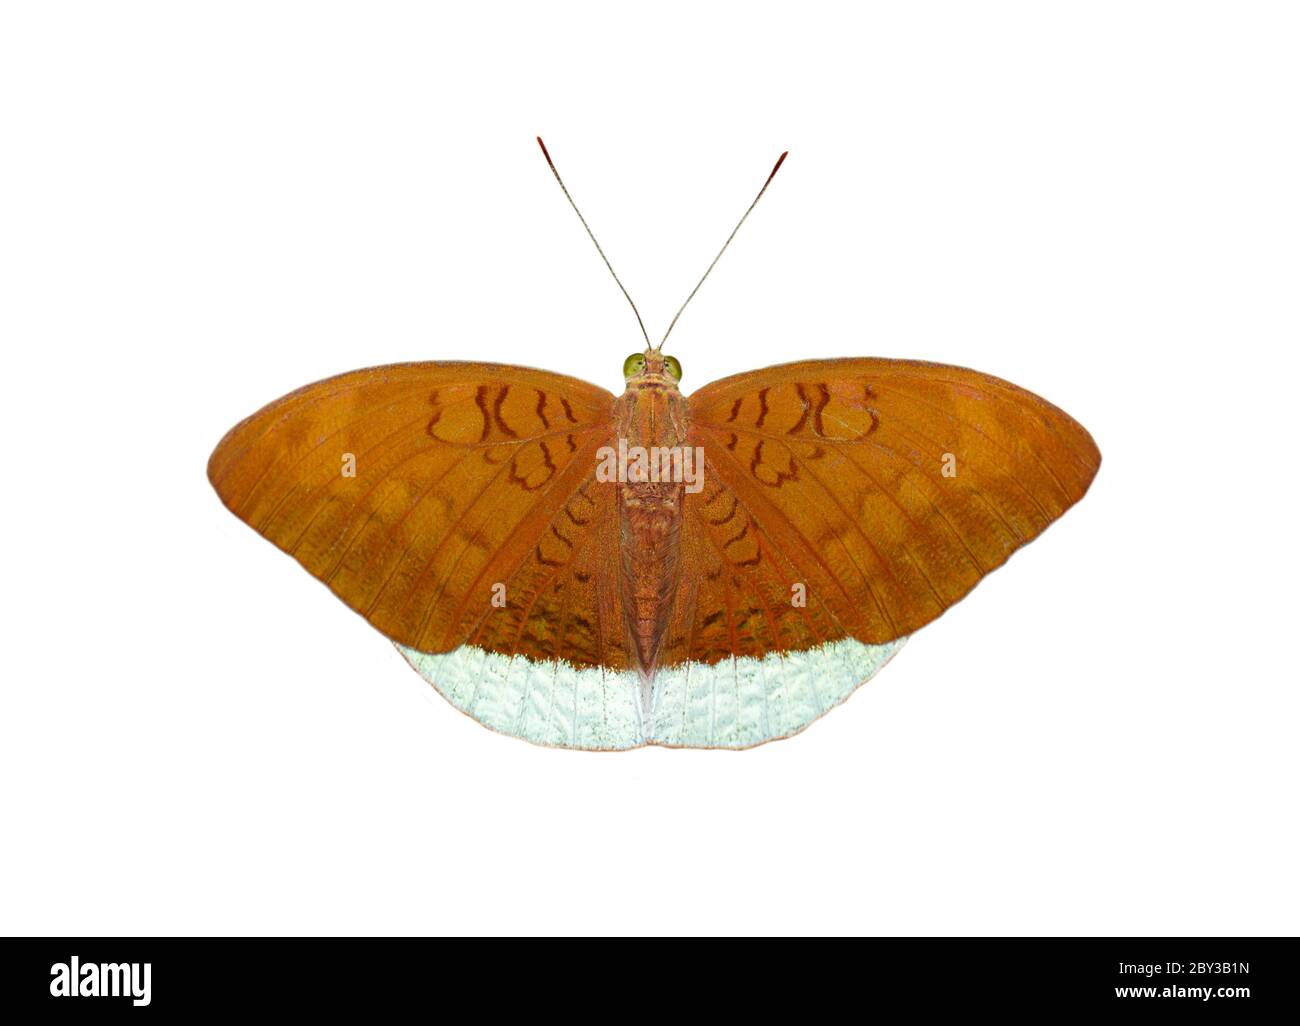 Immagine di farfalle comuni di ear maschi (Tanaecia julii odilina) isolate su sfondo bianco. Insetto. Animali. Foto Stock